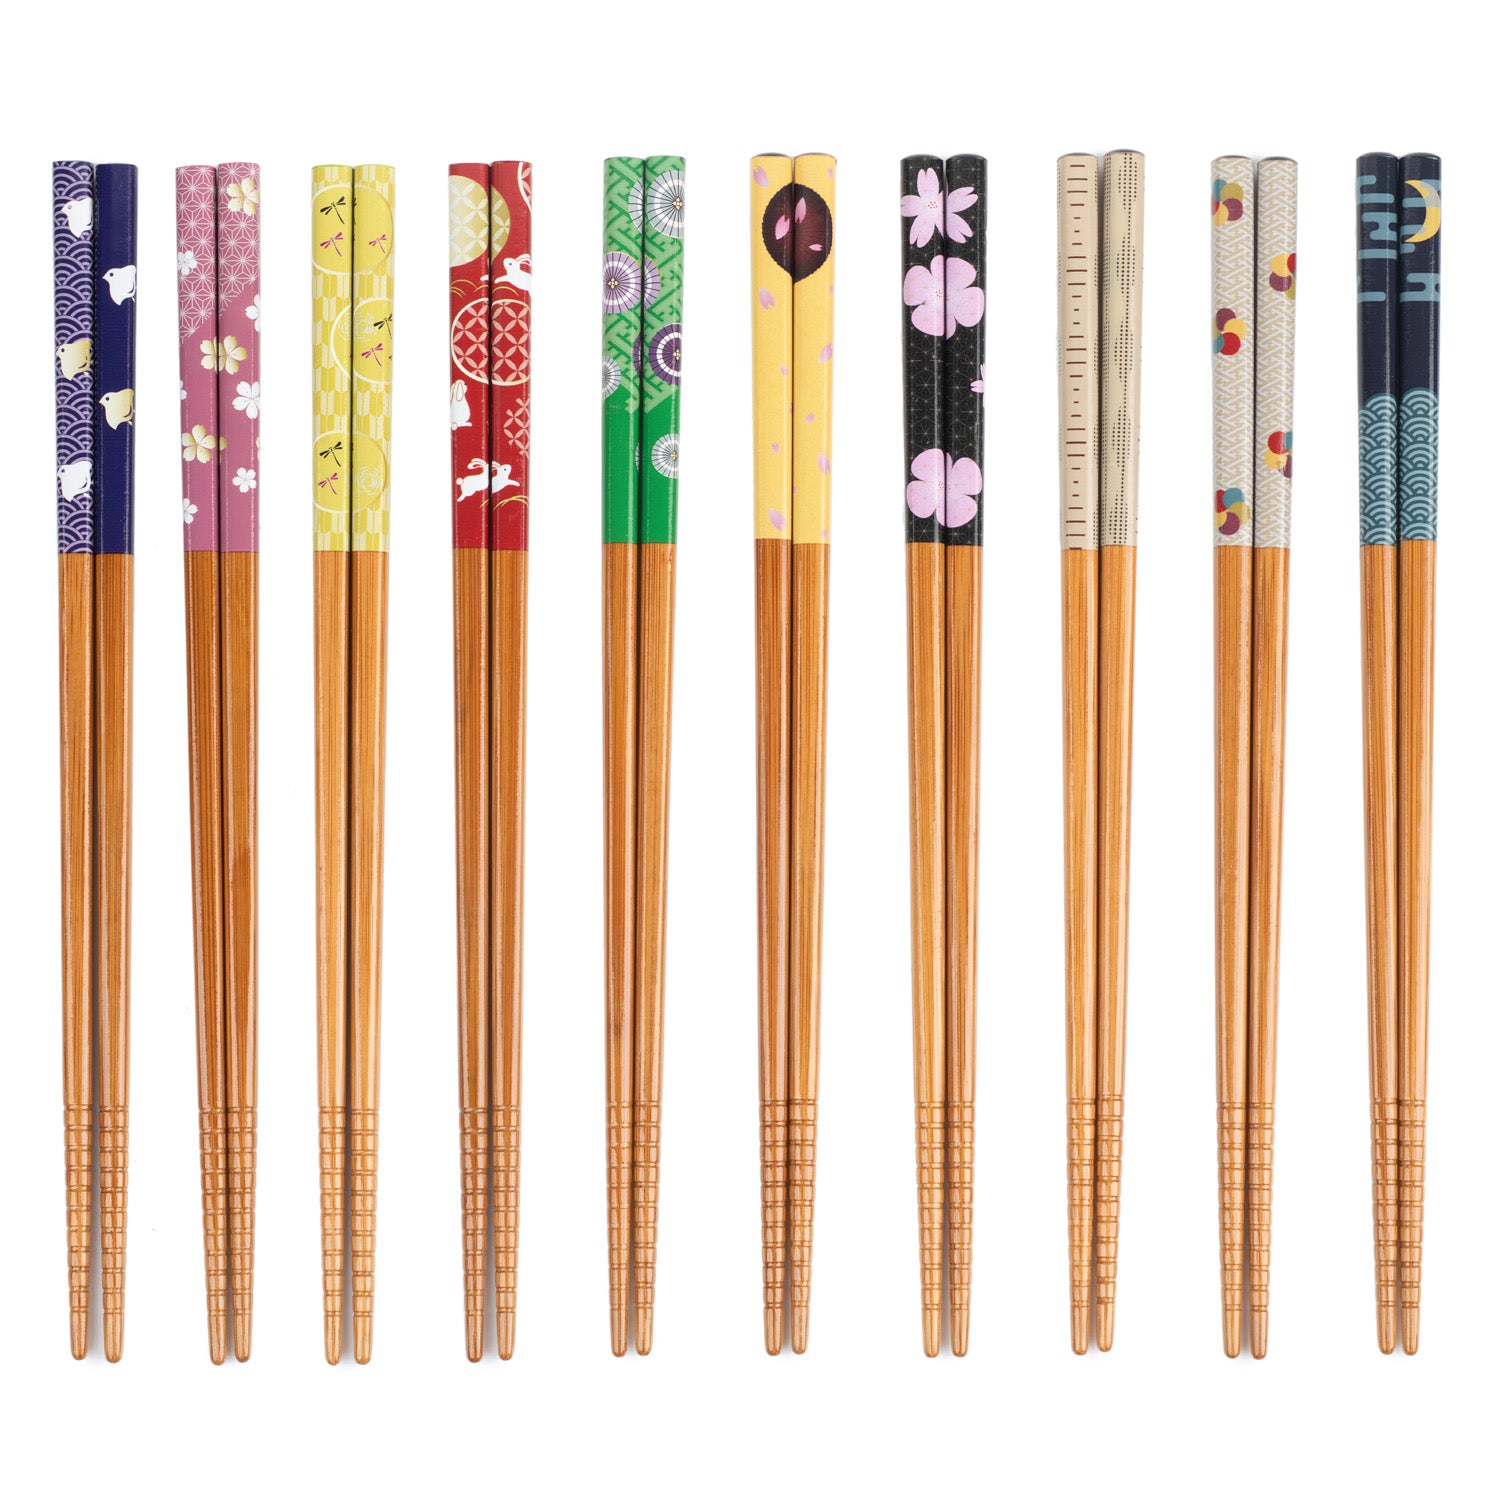 Elegance of Japan Japanese Chopstick Gift Set